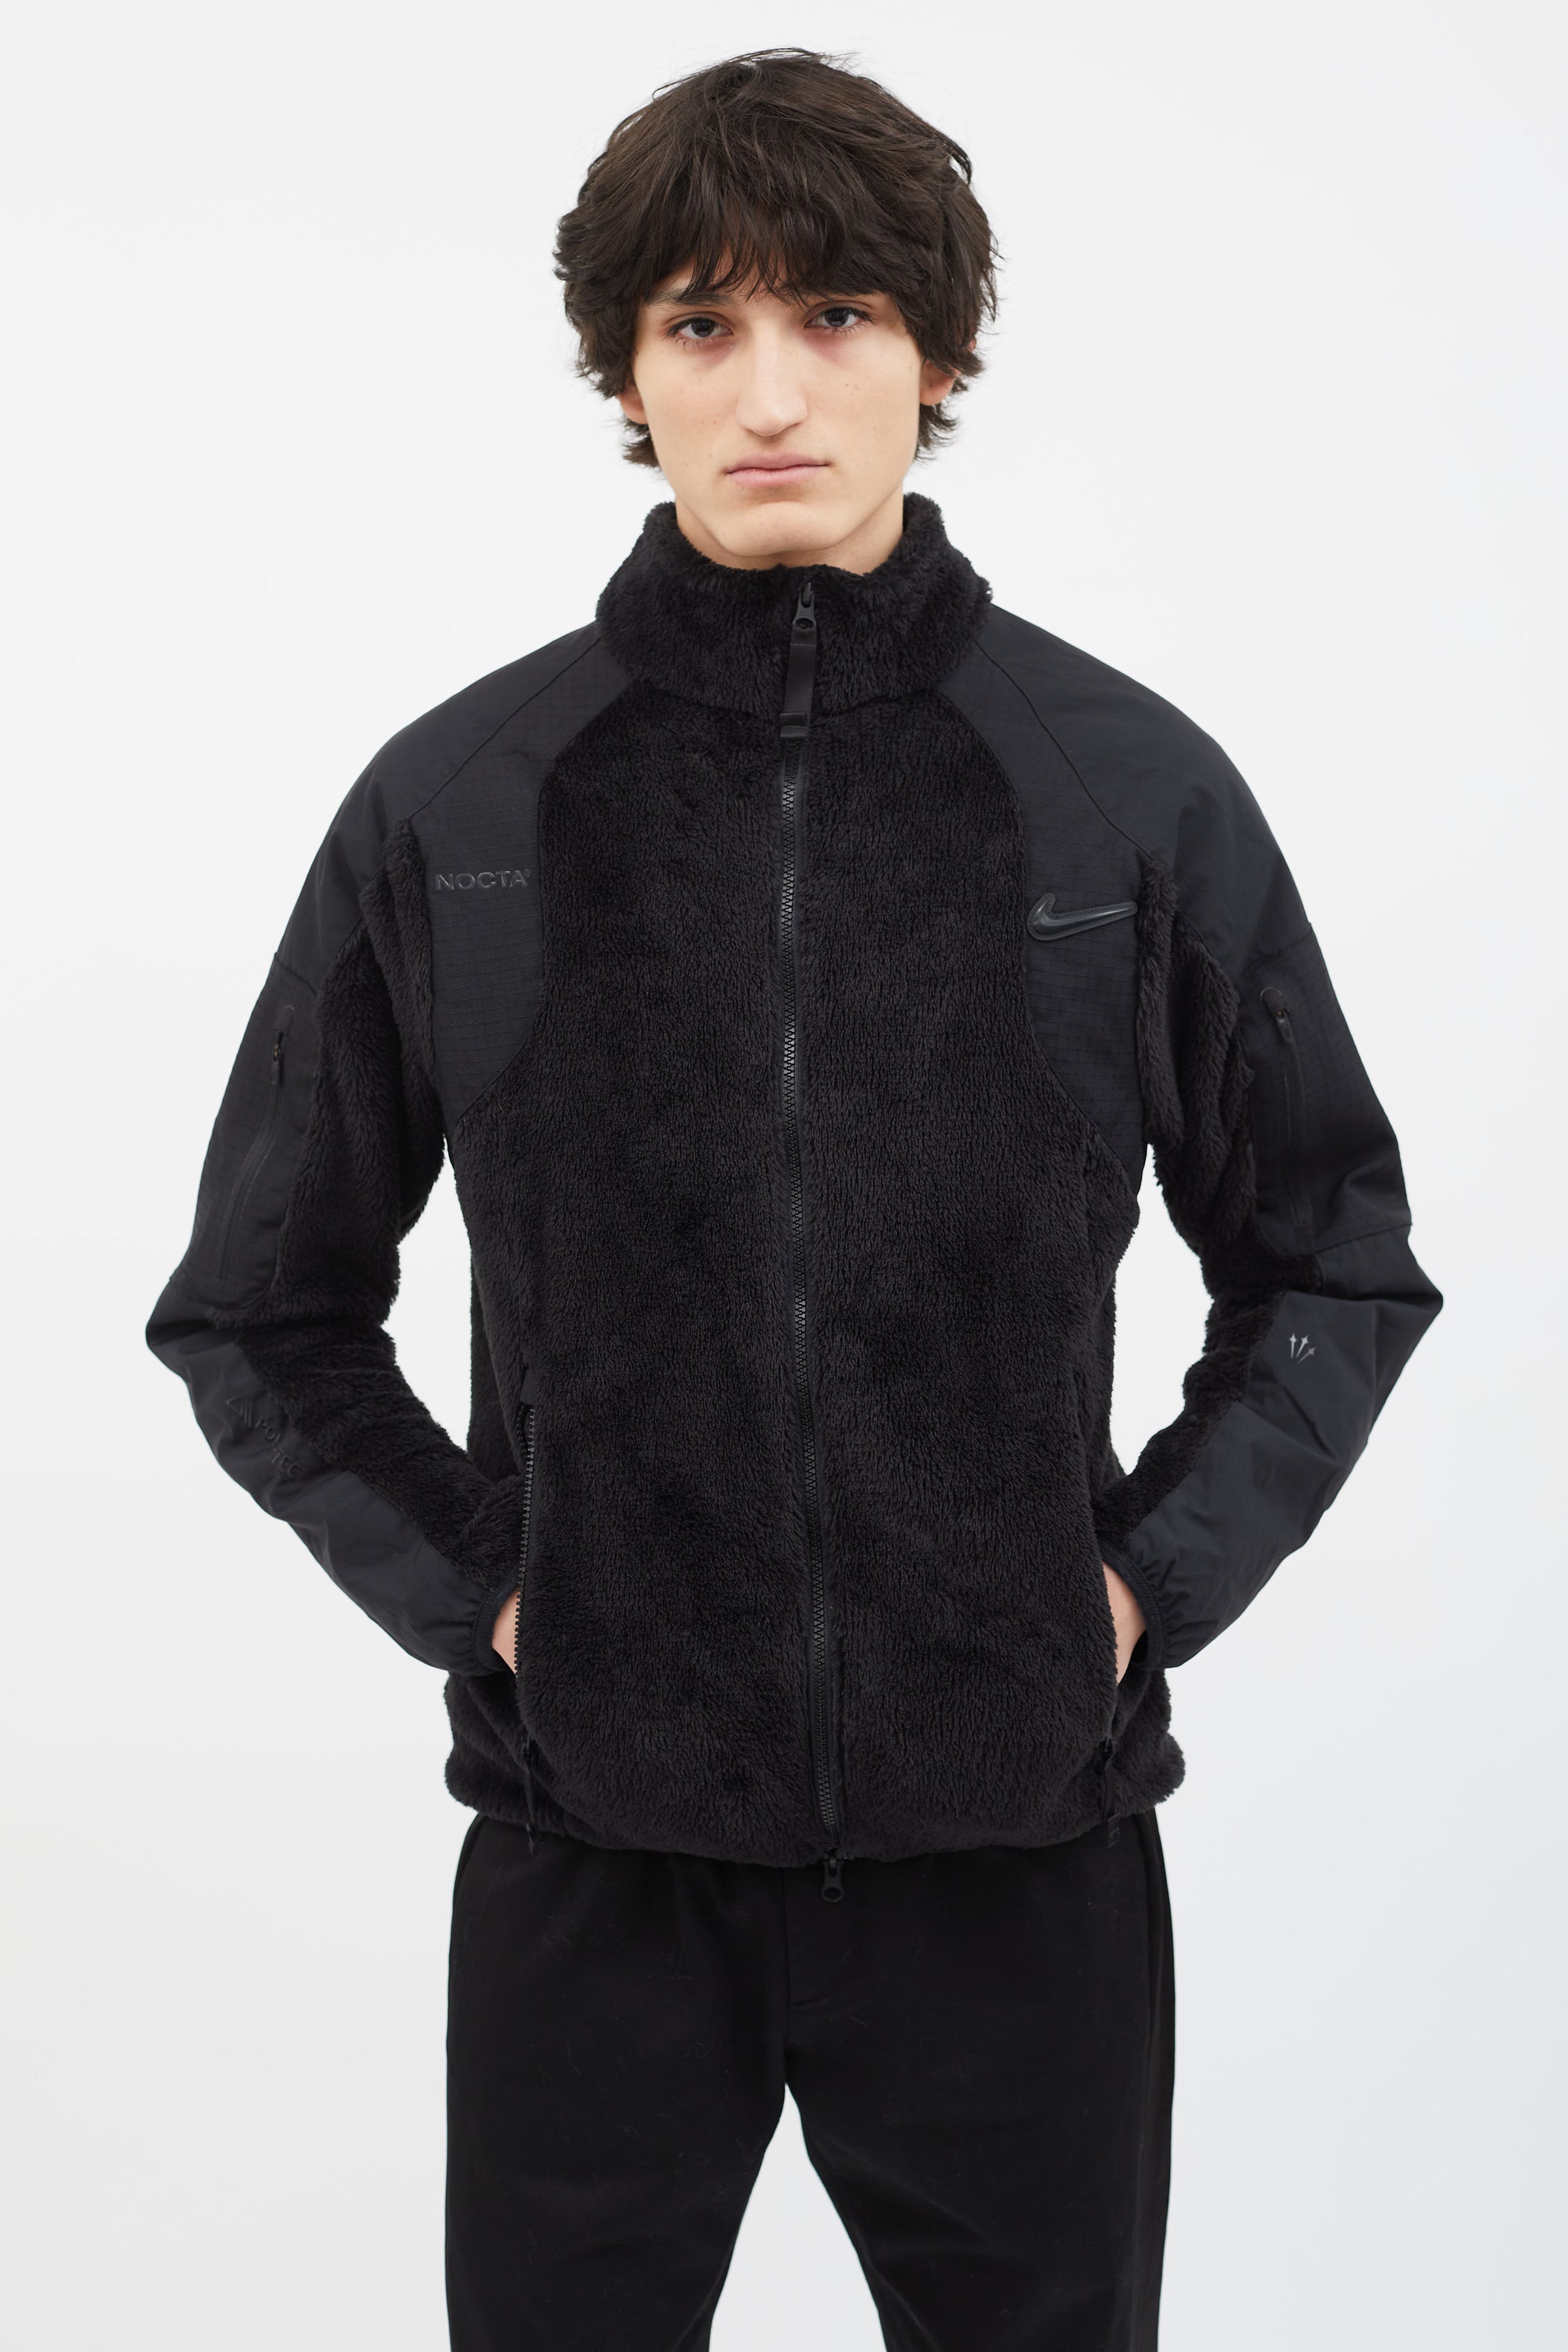 Nike // X NOCTA Black Zip Fleece Jacket – VSP Consignment